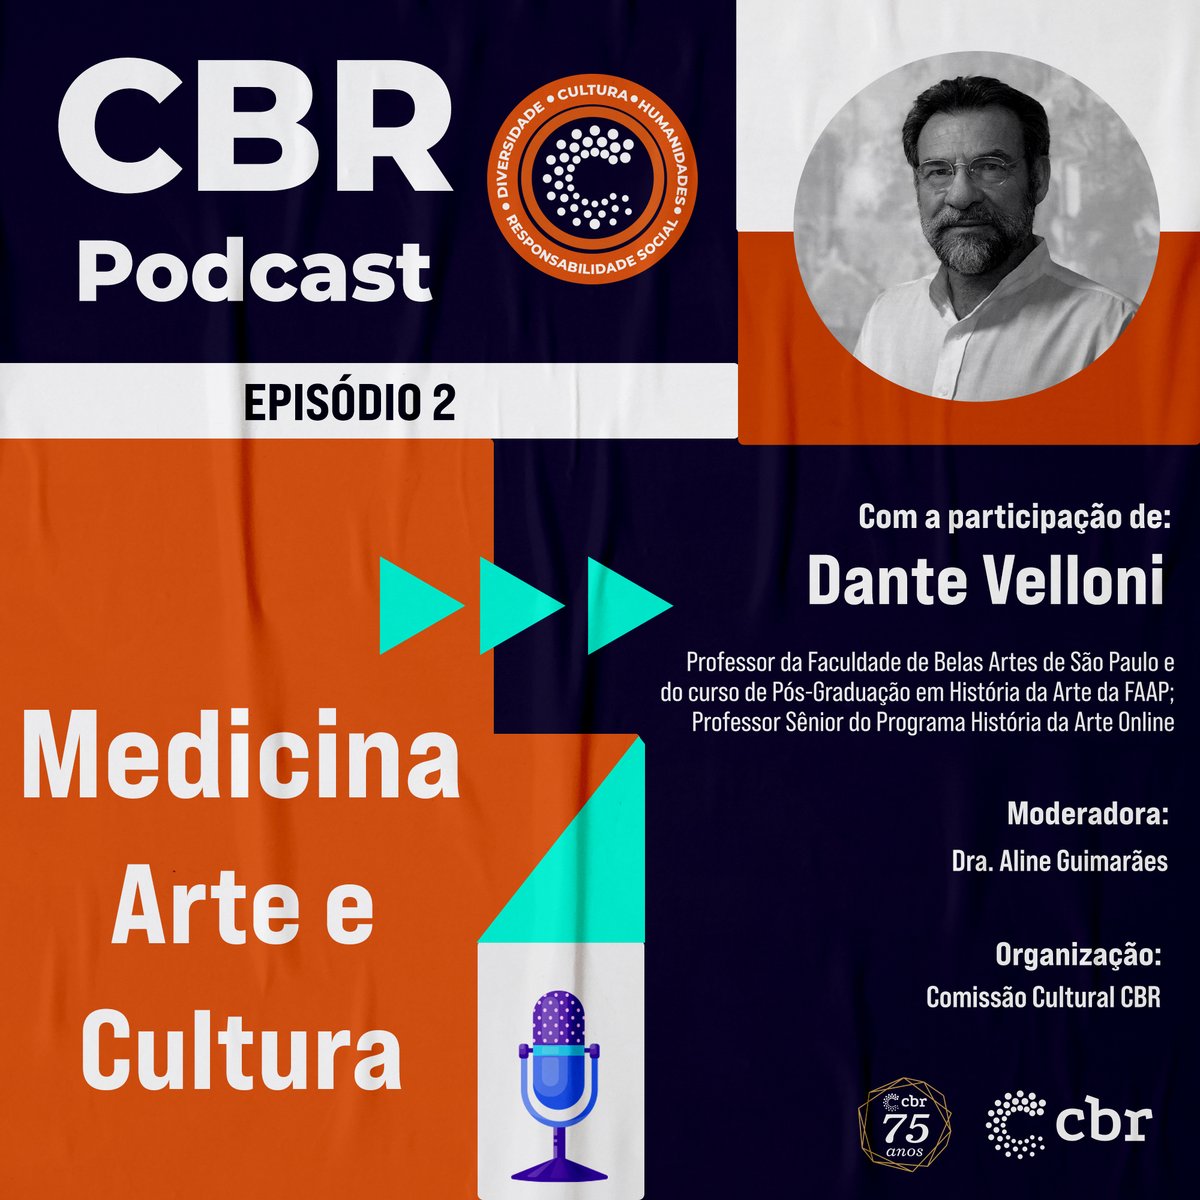 O segundo episódio “Medicina Arte e Cultura” do CBR Podcast já está disponível! Com a apresentação da Dra. Aline Dias Guimarães, médica radiologista, gerente médica da DASA Educa e membro da comissão cultural do CBR e com a participação do Prof. Ms. Dante Velloni. #CBR75anos